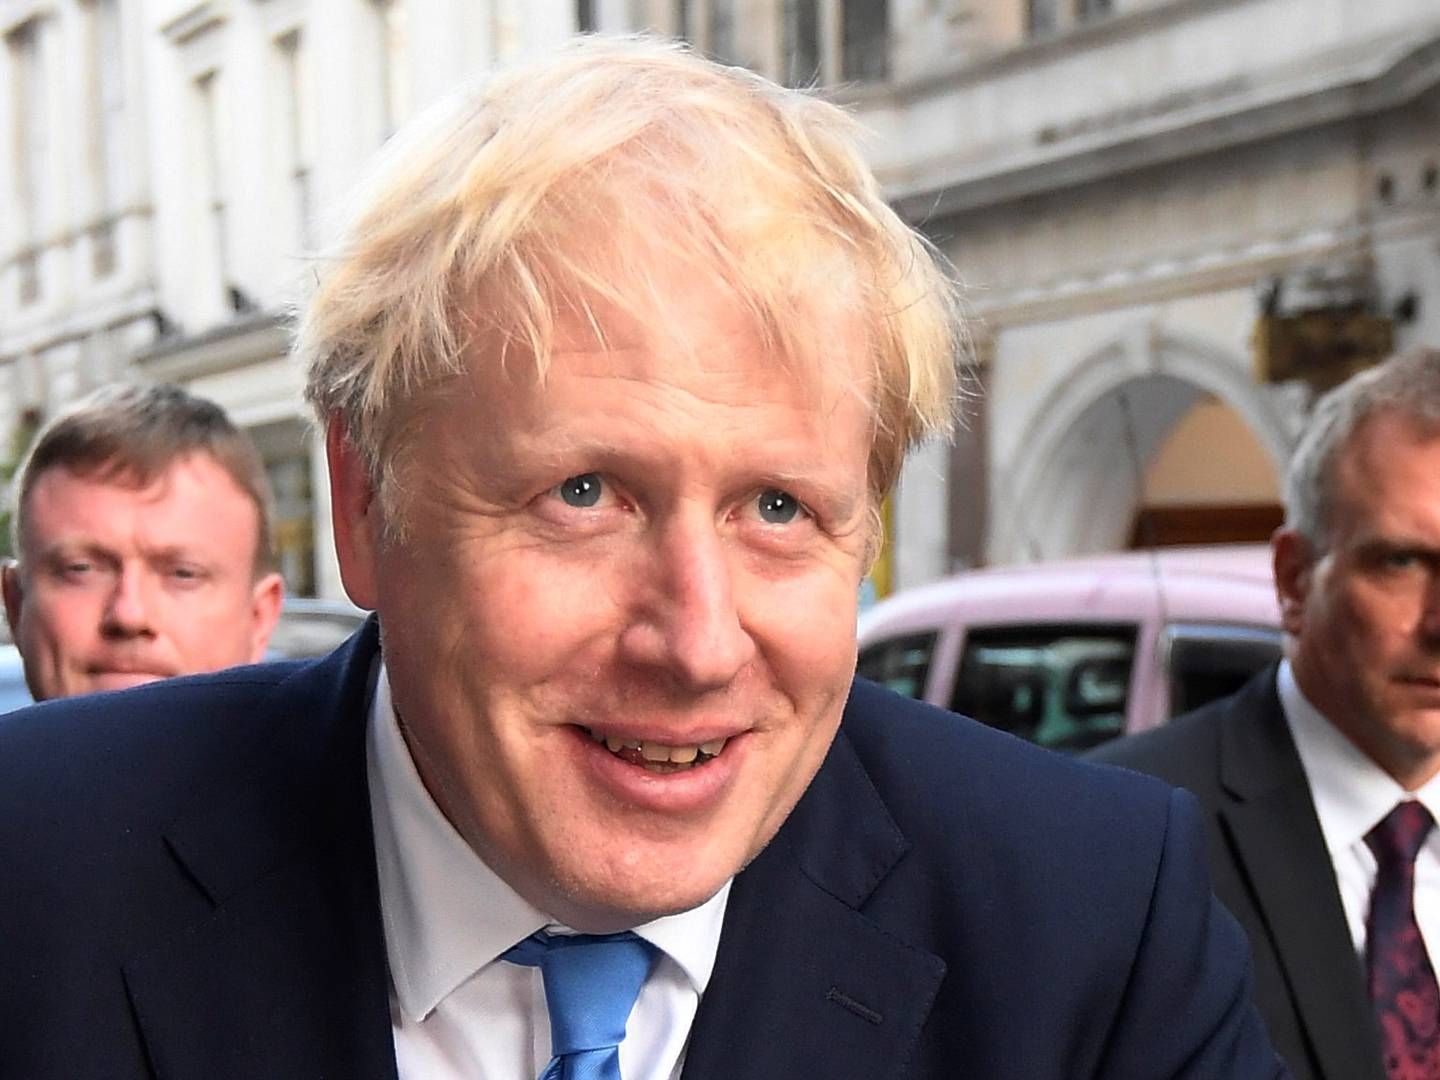 Boris Johnson blev i går valgt som ny leder af det konservative parti i Storbritannien. Han blev samtidig ny premierminister. | Foto: Toby Melville / Reuters / Ritzau Scanpix